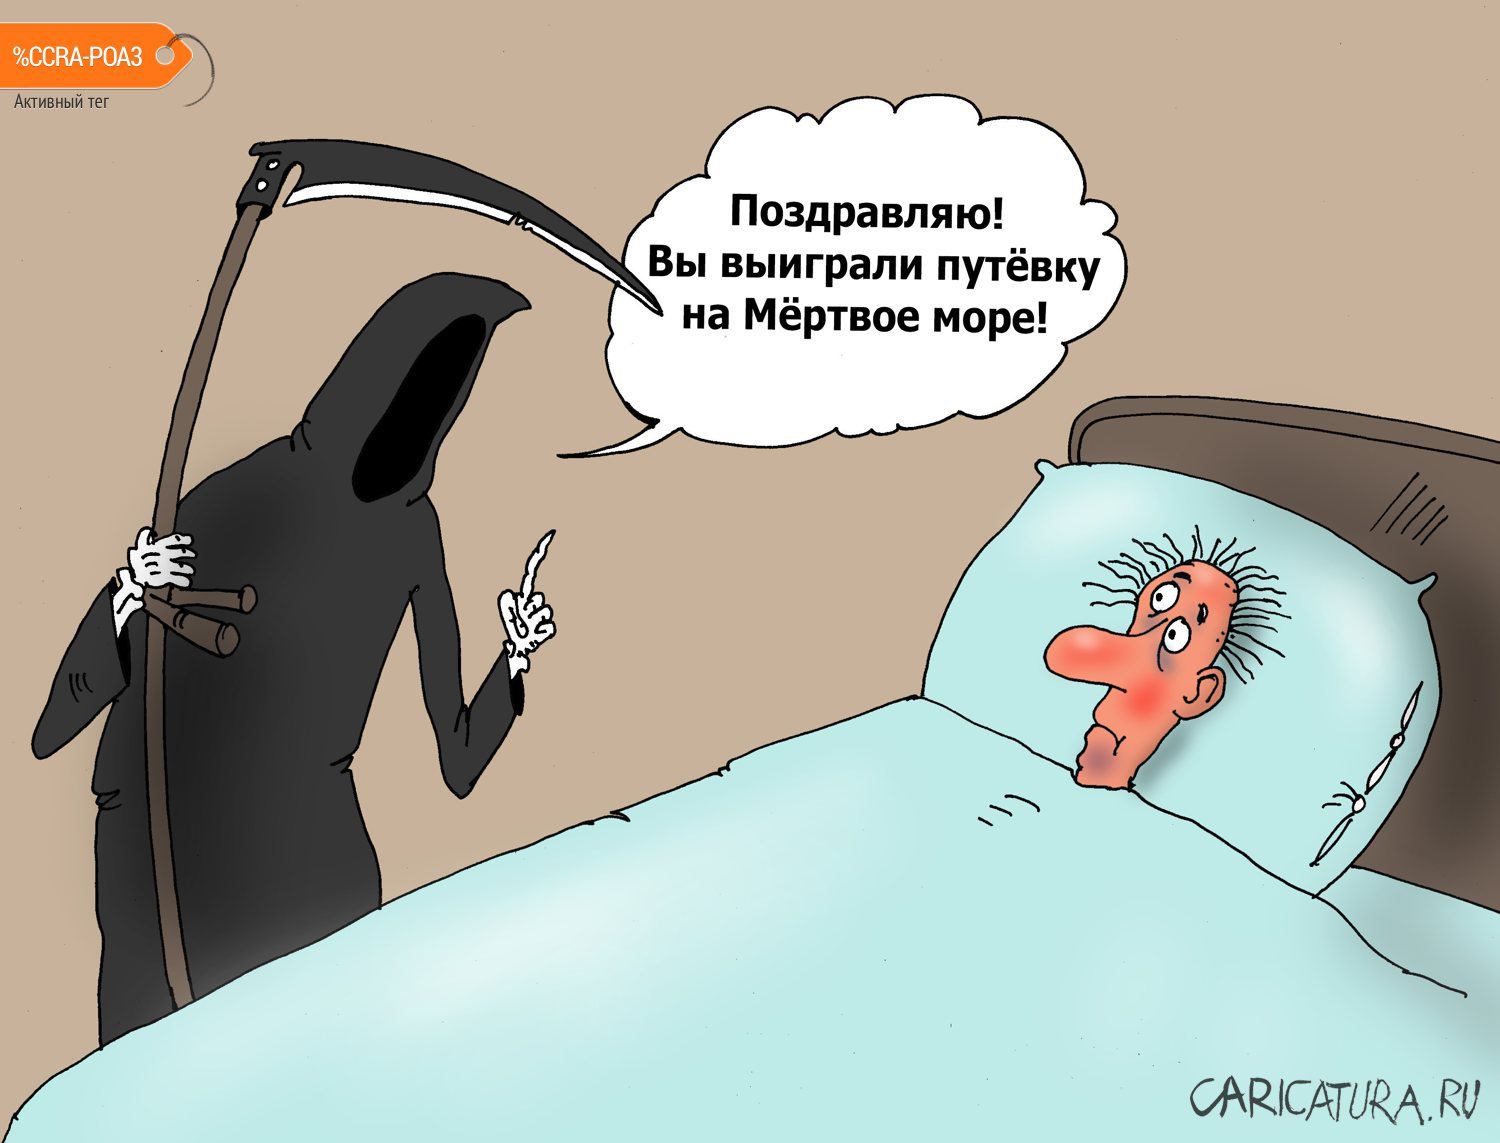 Карикатура "Лотерея", Валерий Тарасенко